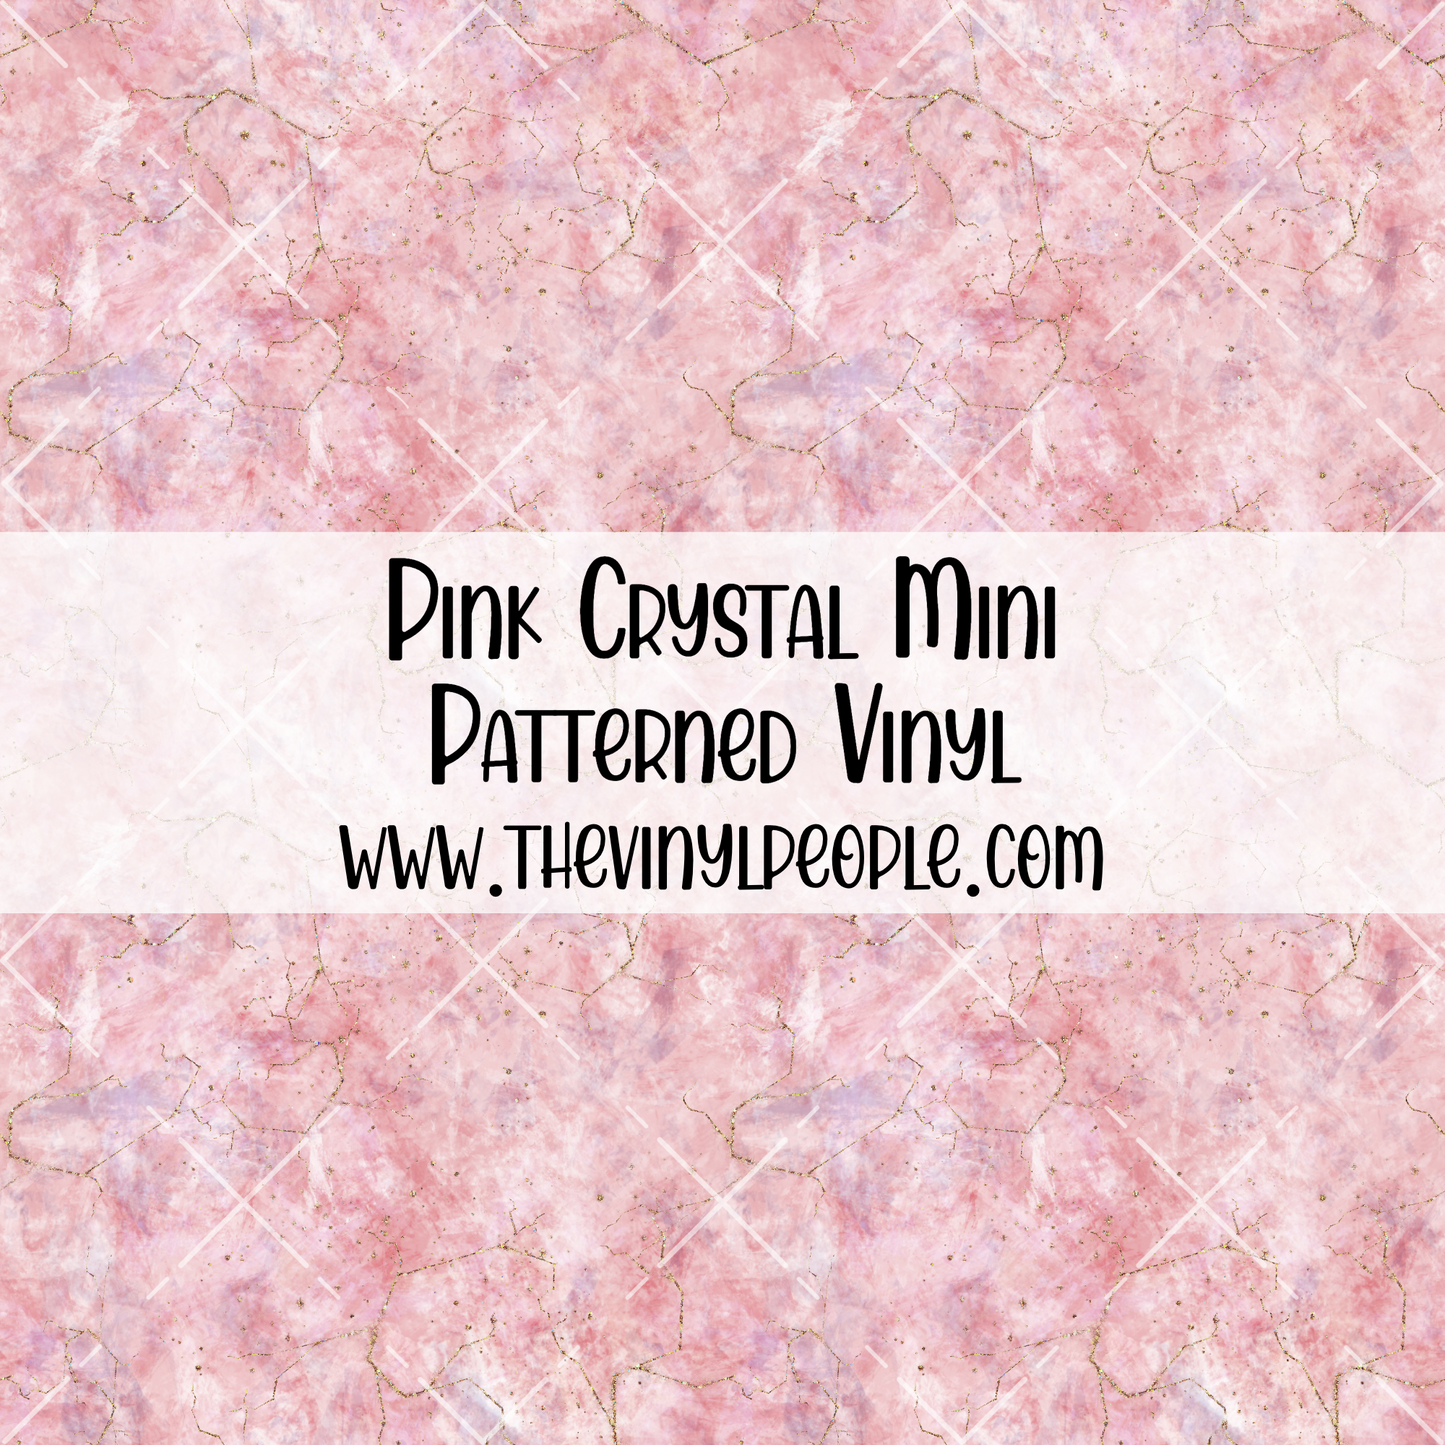 Pink Crystal Patterned Vinyl